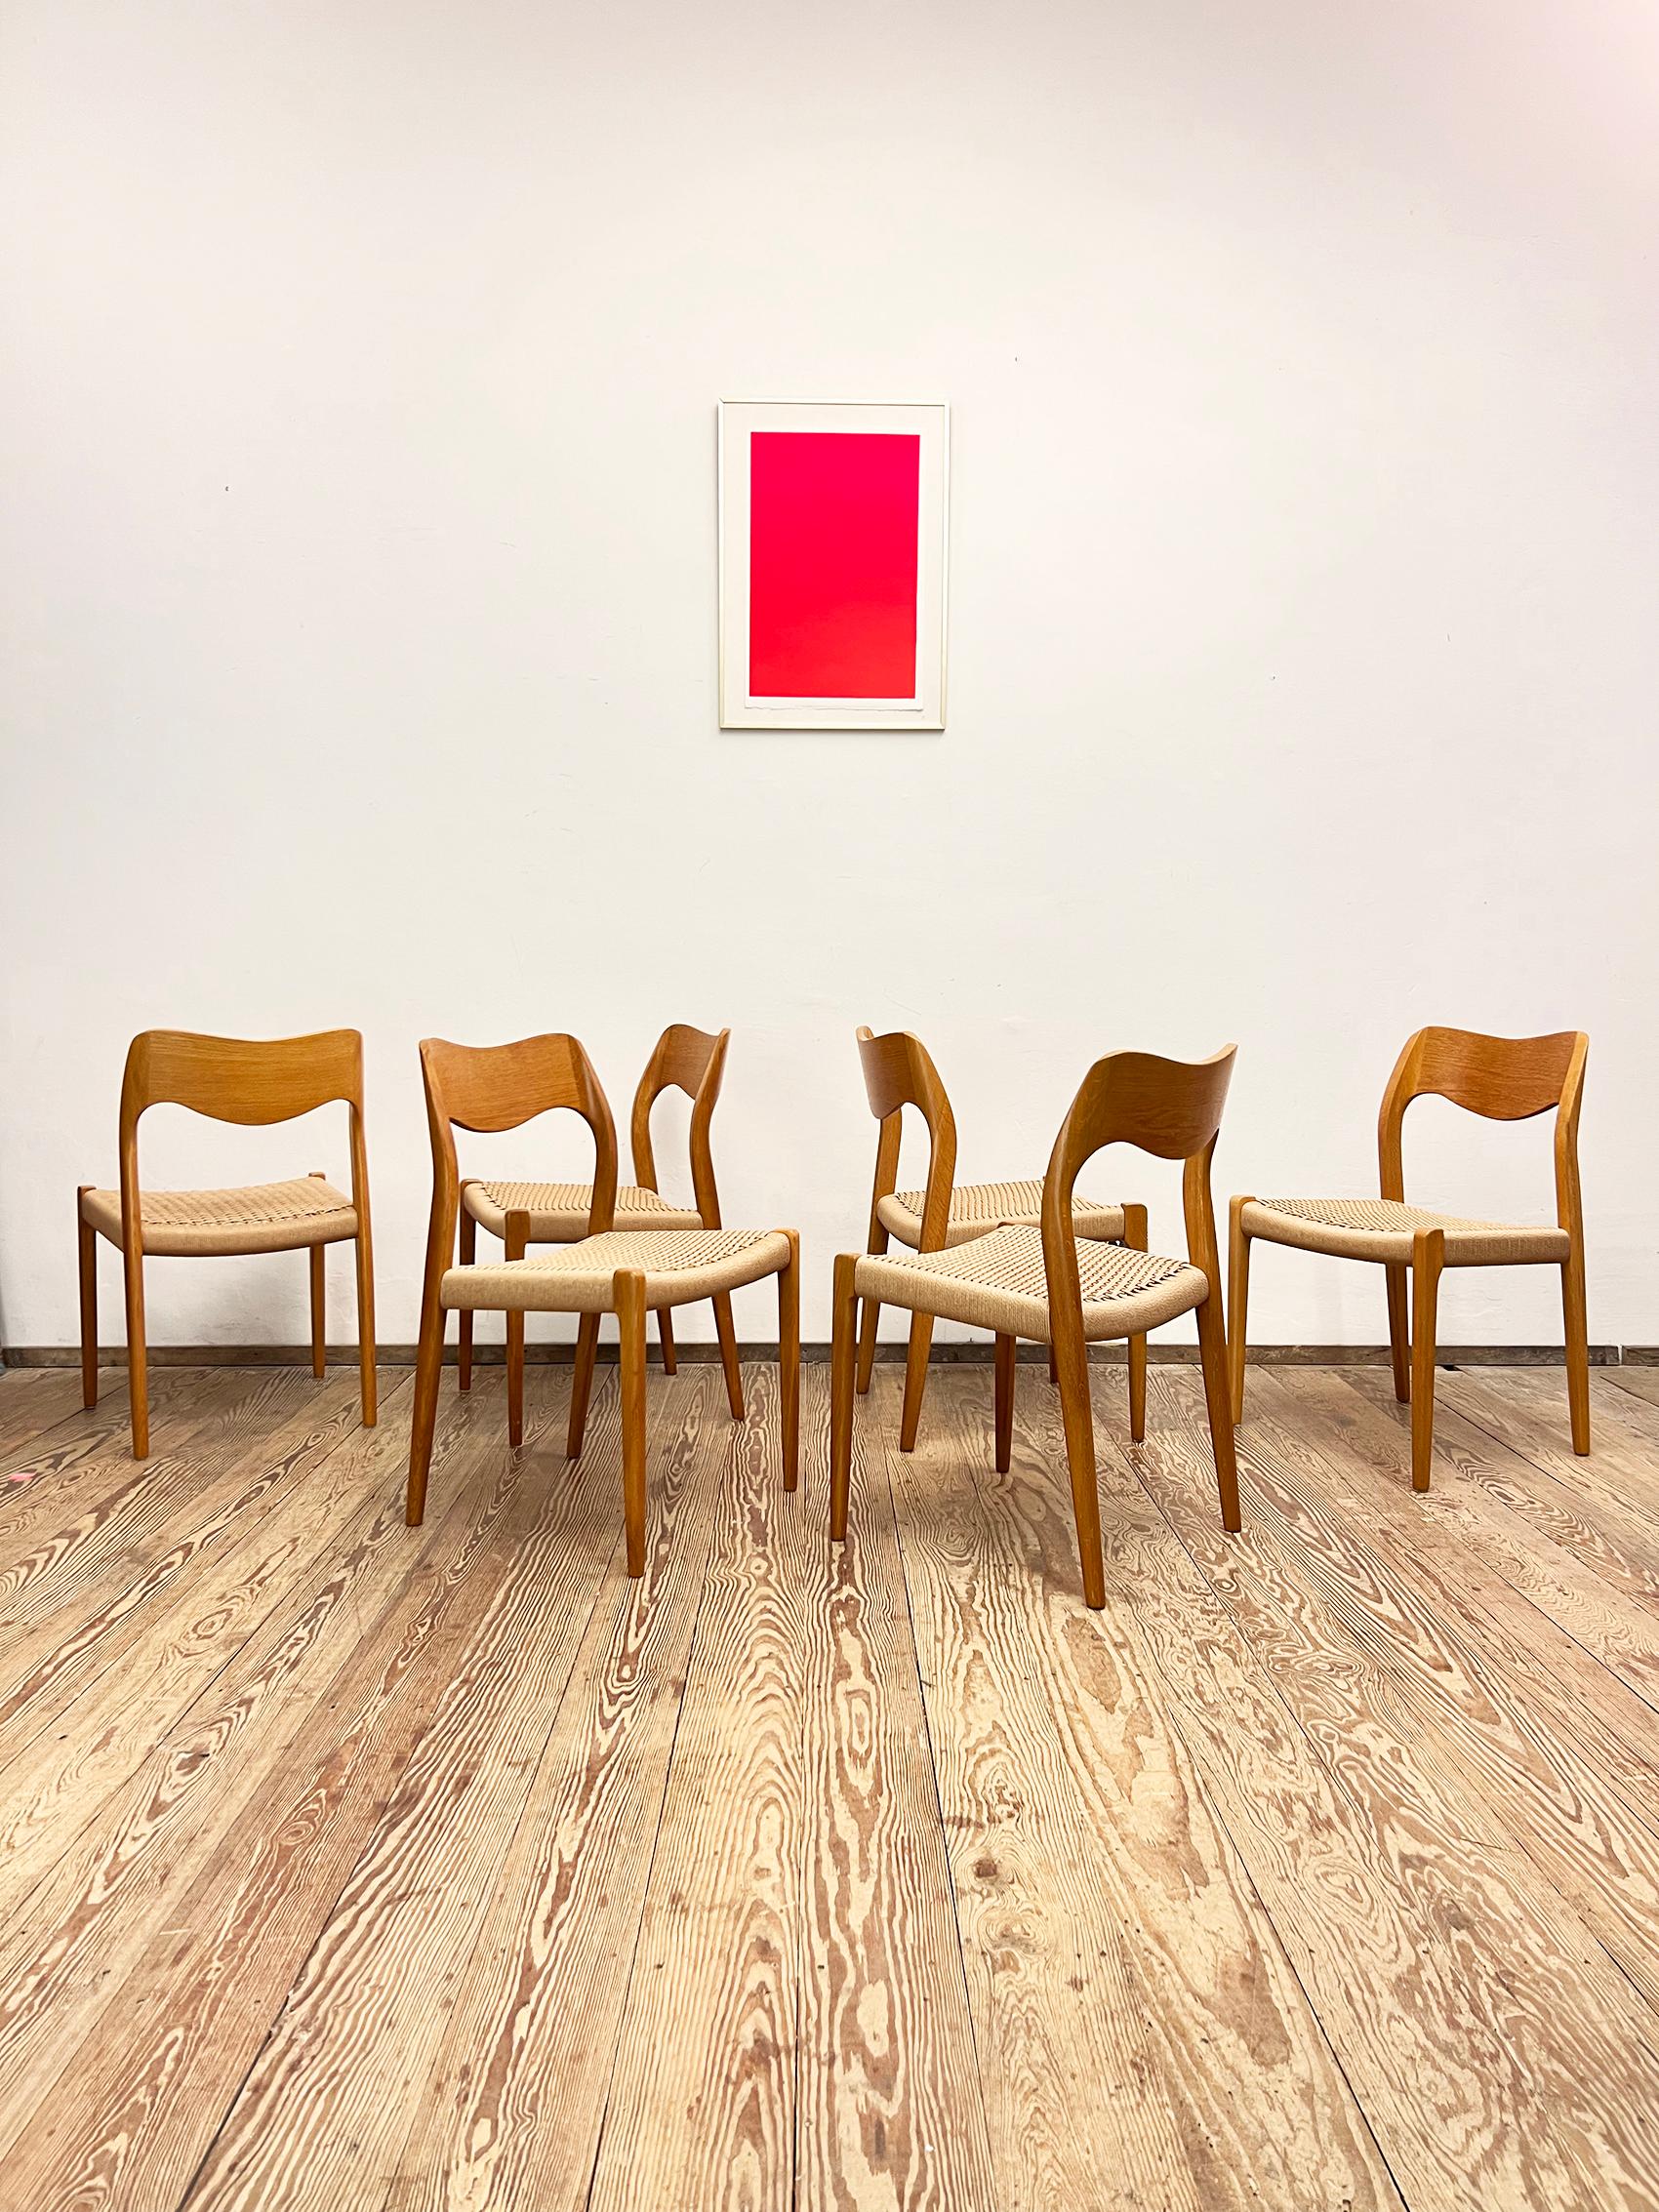 Abmessungen 49 x 49 x 79 x 44cm (Breite x Tiefe x Höhe x Sitzhöhe)

Dänisches Design von Niels O. Møller, hergestellt von J. l. Møller in Dänemark. Das Set besteht aus 6 Esszimmerstühlen aus Eichenholz, teilweise furniert und mit Papierkordelsitzen.